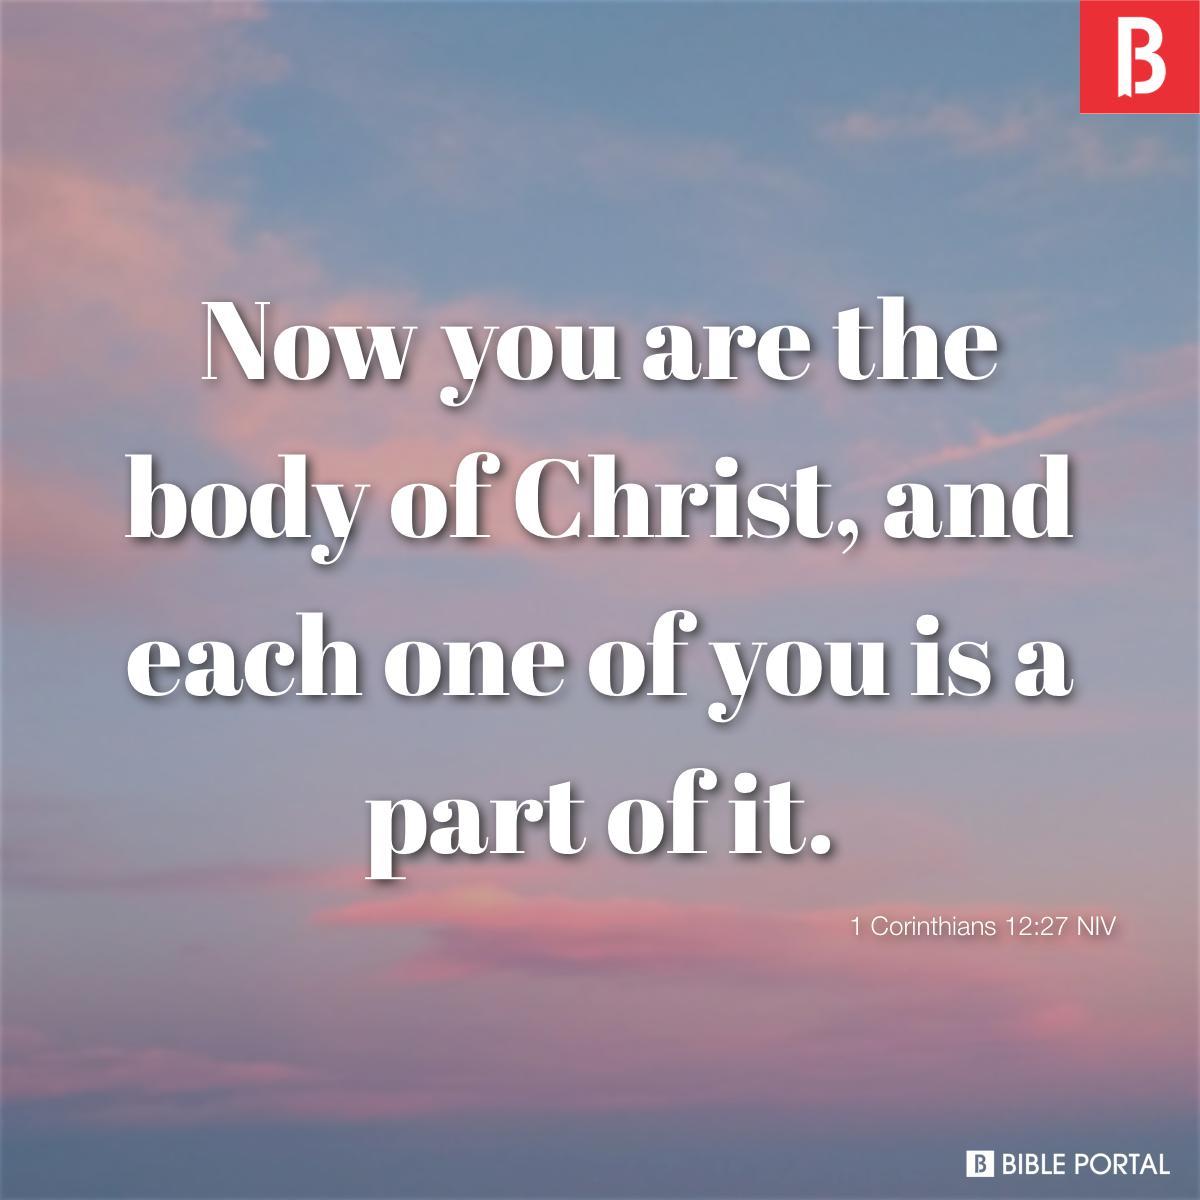 1 Corinthians 12:27 NIV